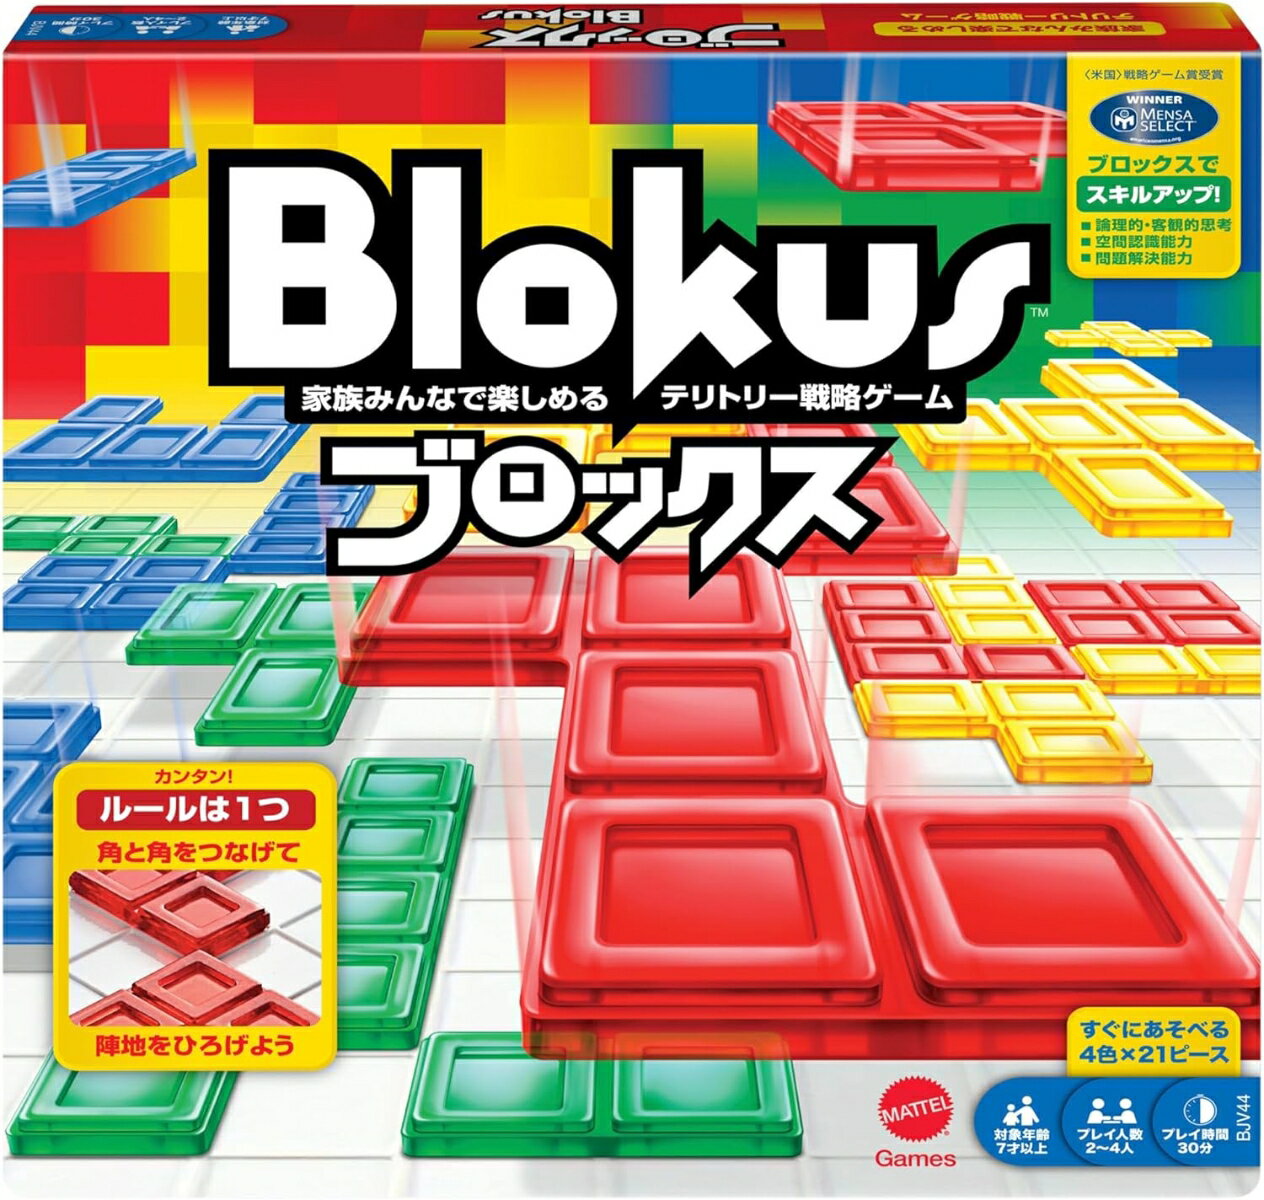 マテルゲーム(Mattel Game) ブロックス Blokus【知育ゲーム】【ボードゲーム】【7歳 ...